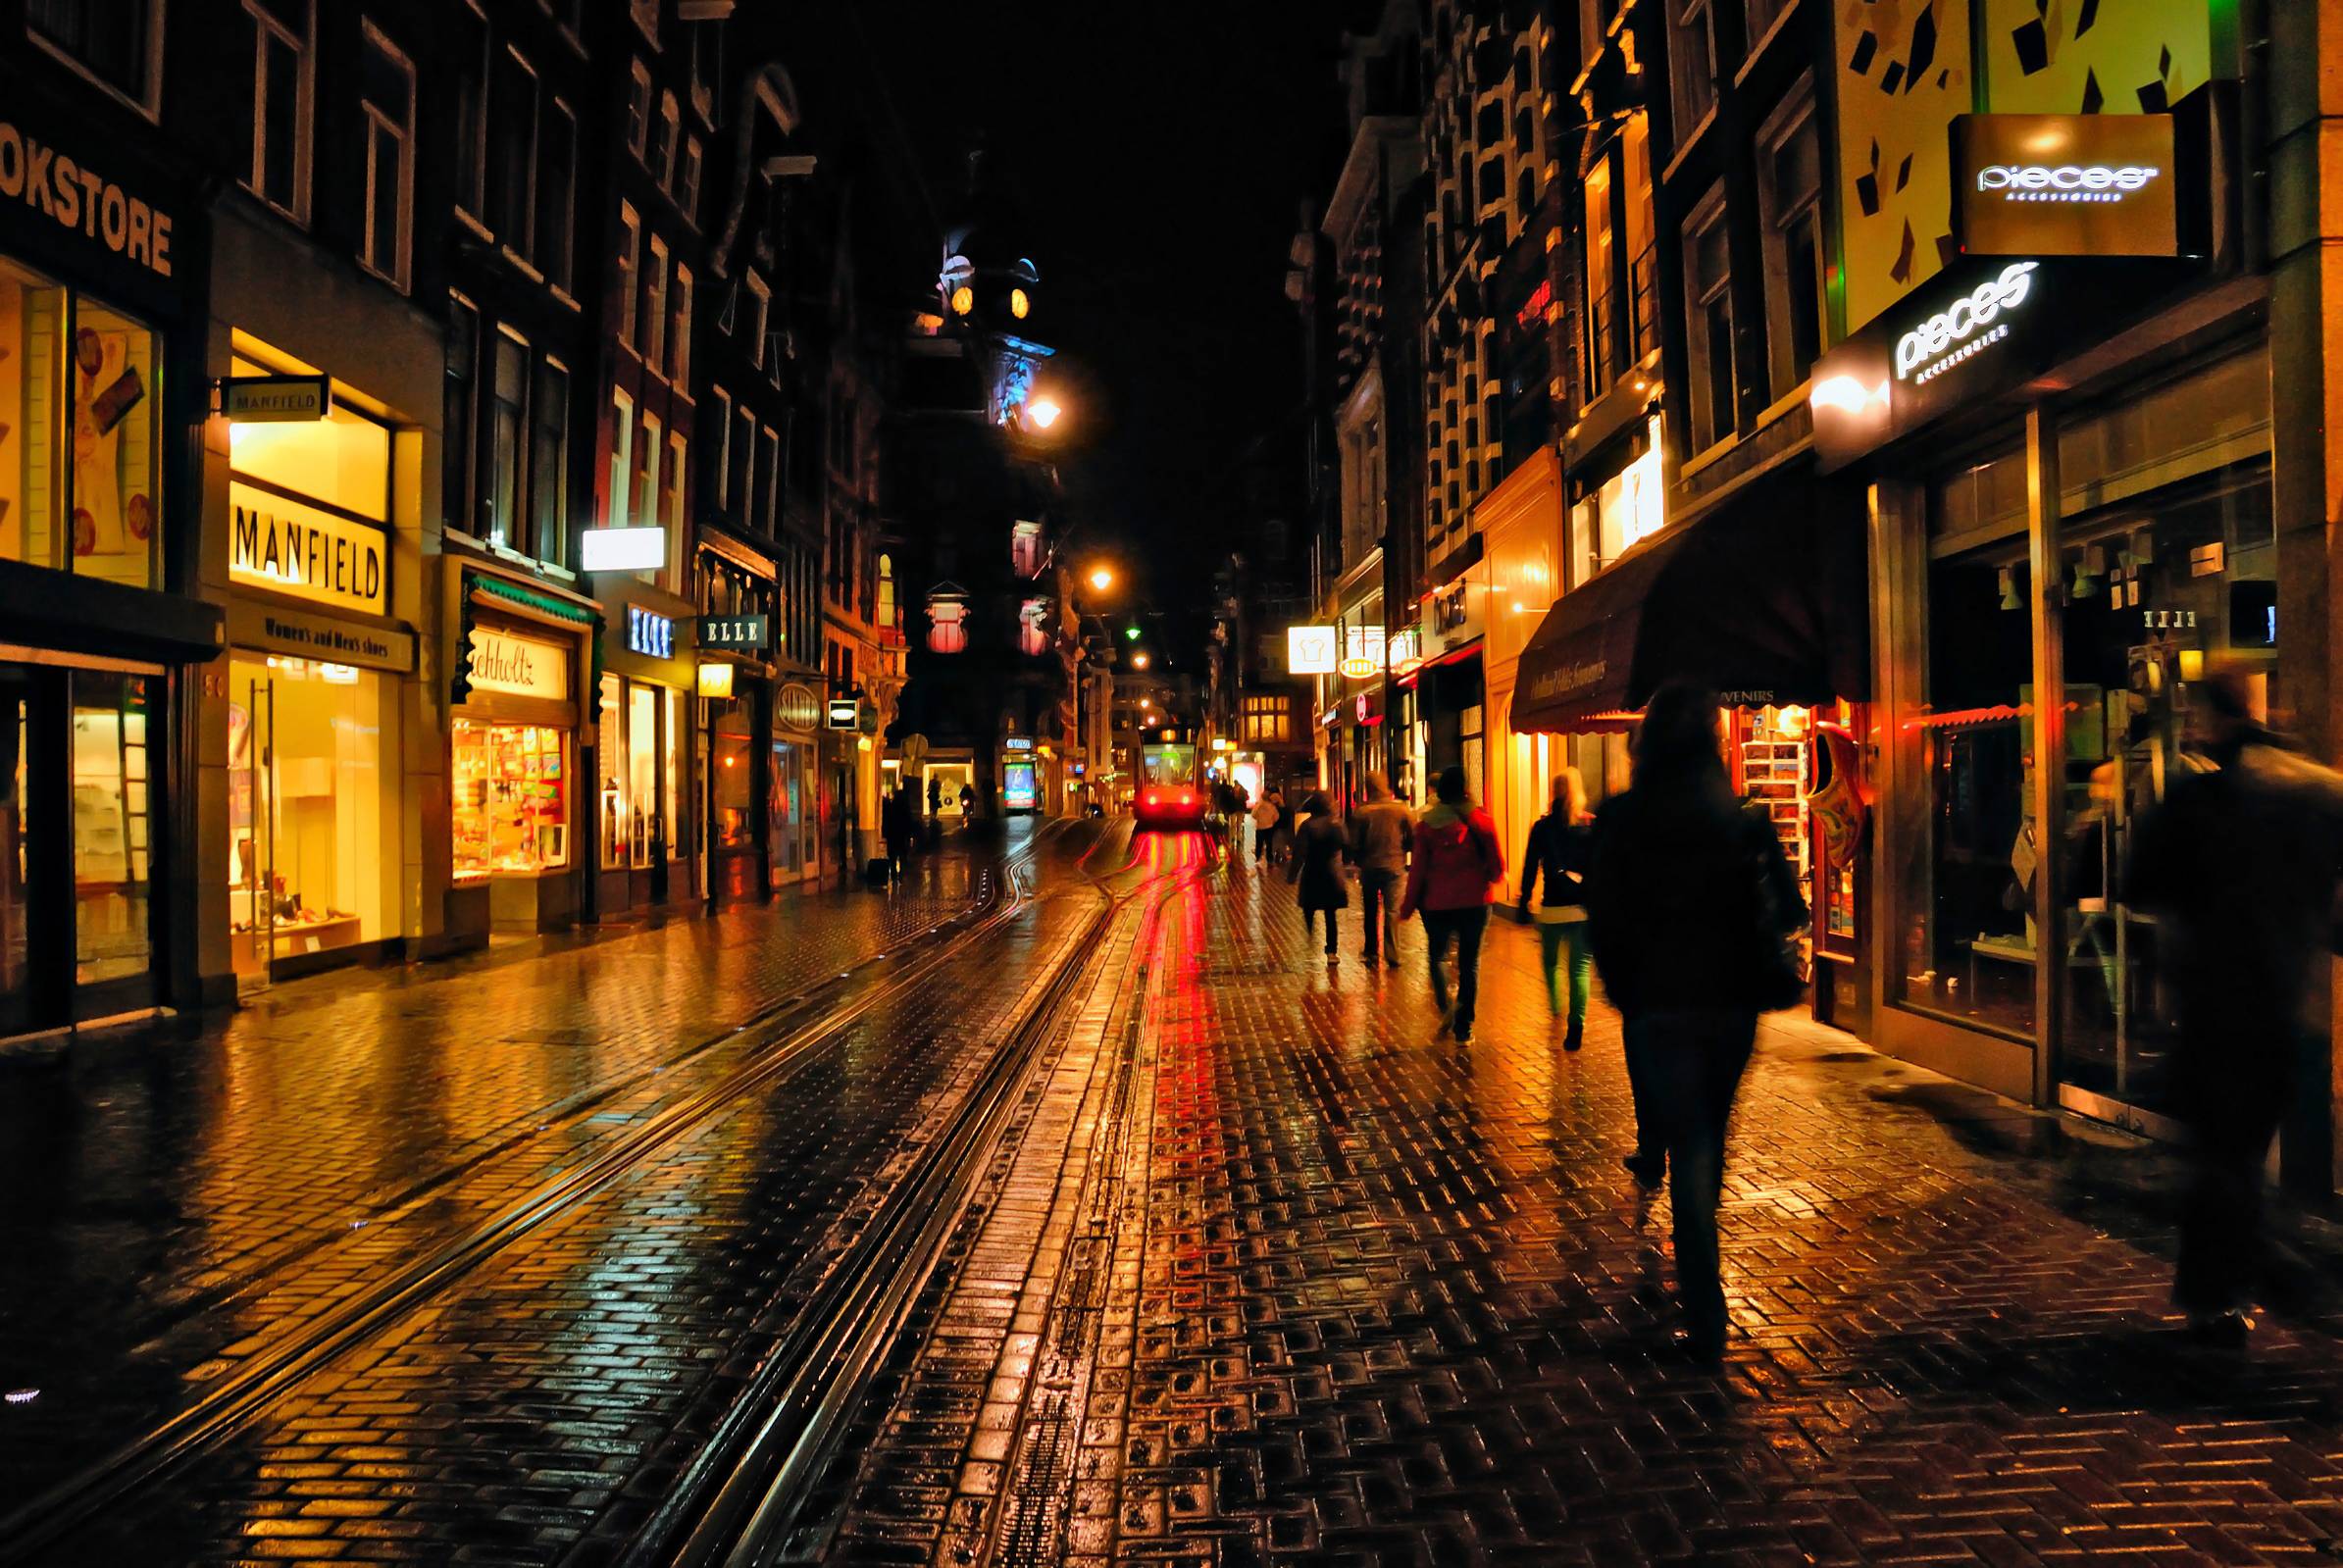 street at night wallpaper hd